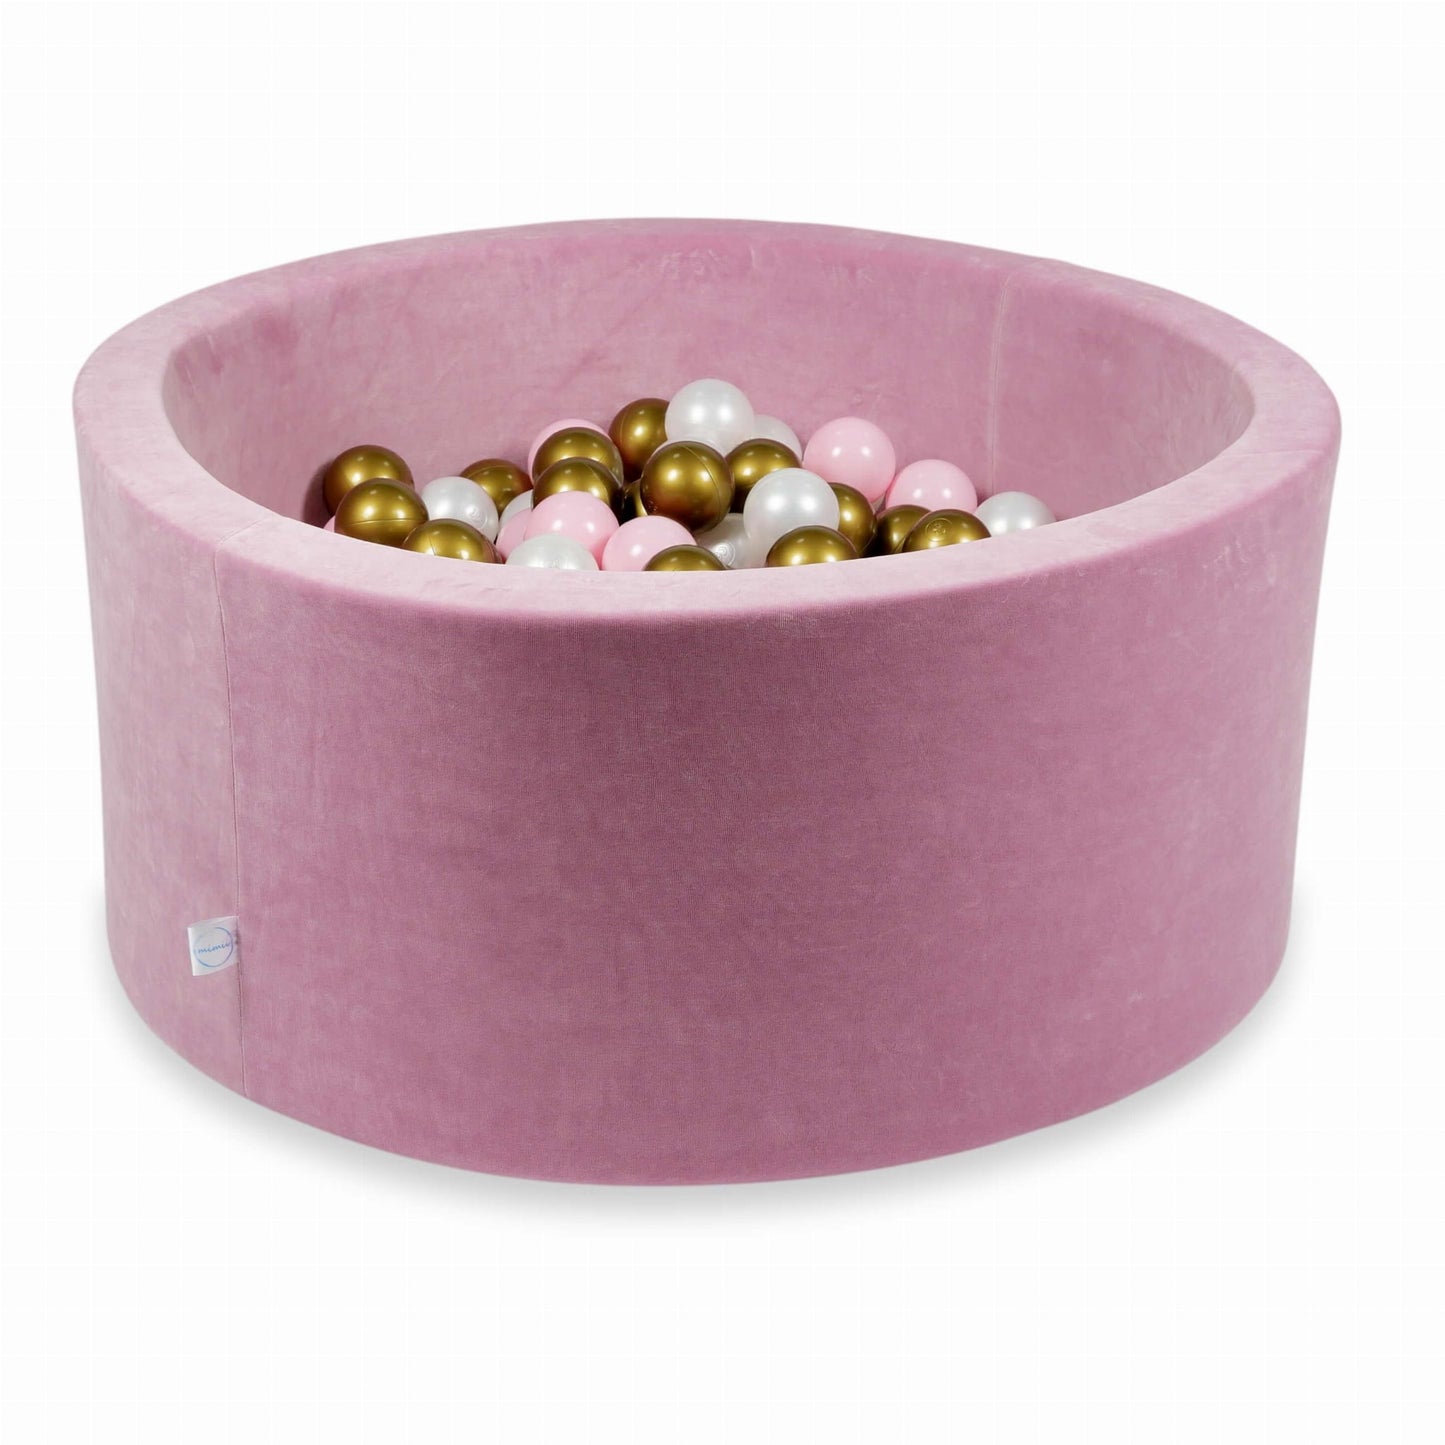 Piscine à Balles 90x40 Velvet Soft rose avec balles 300 pcs  (perle, vieil or, rose clair)